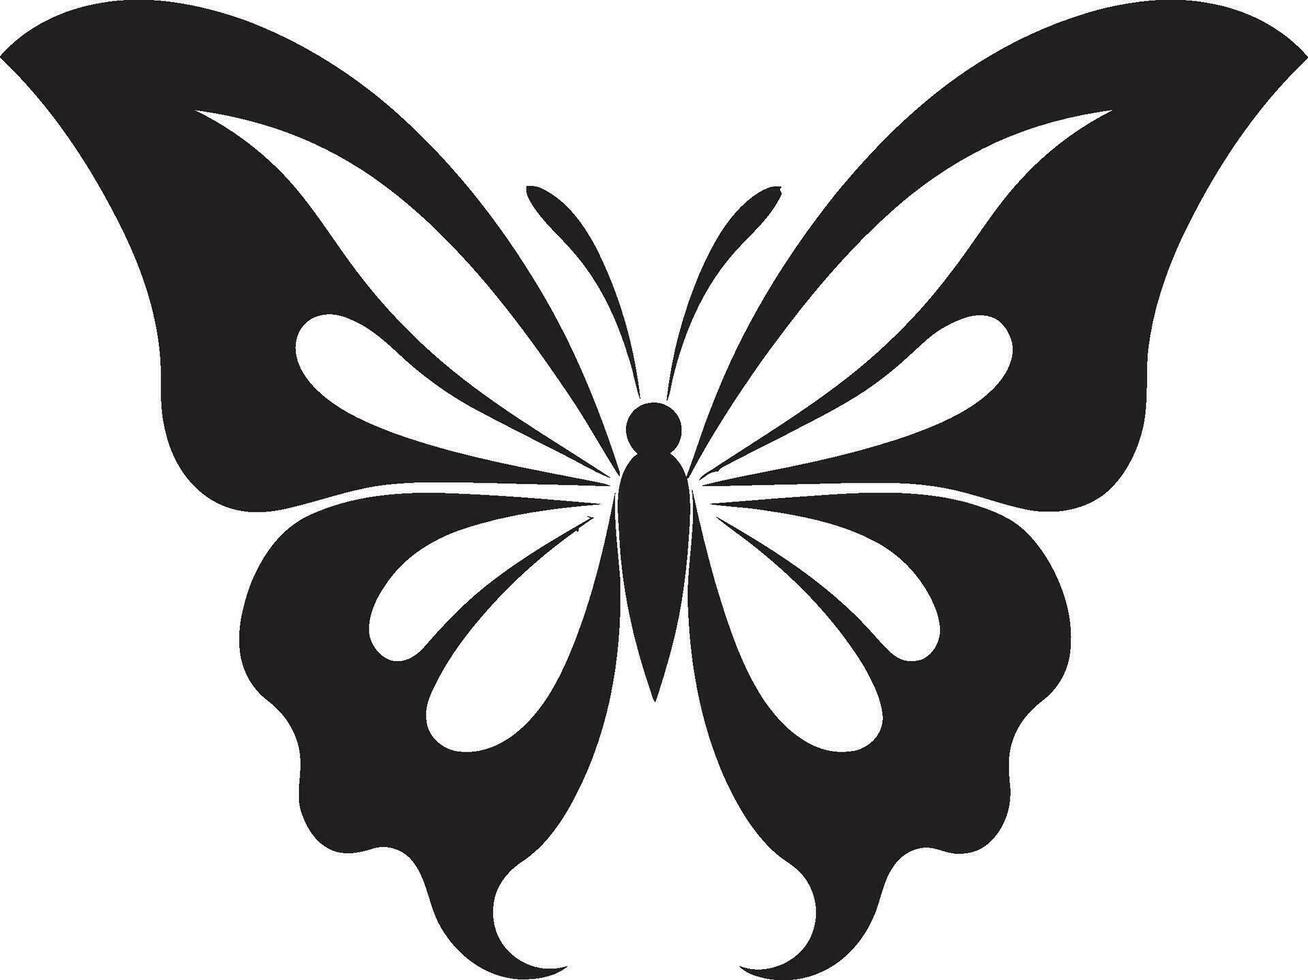 Graceful Elegance Butterfly Mark in Black Artistic Wings Noir Butterfly Logo vector